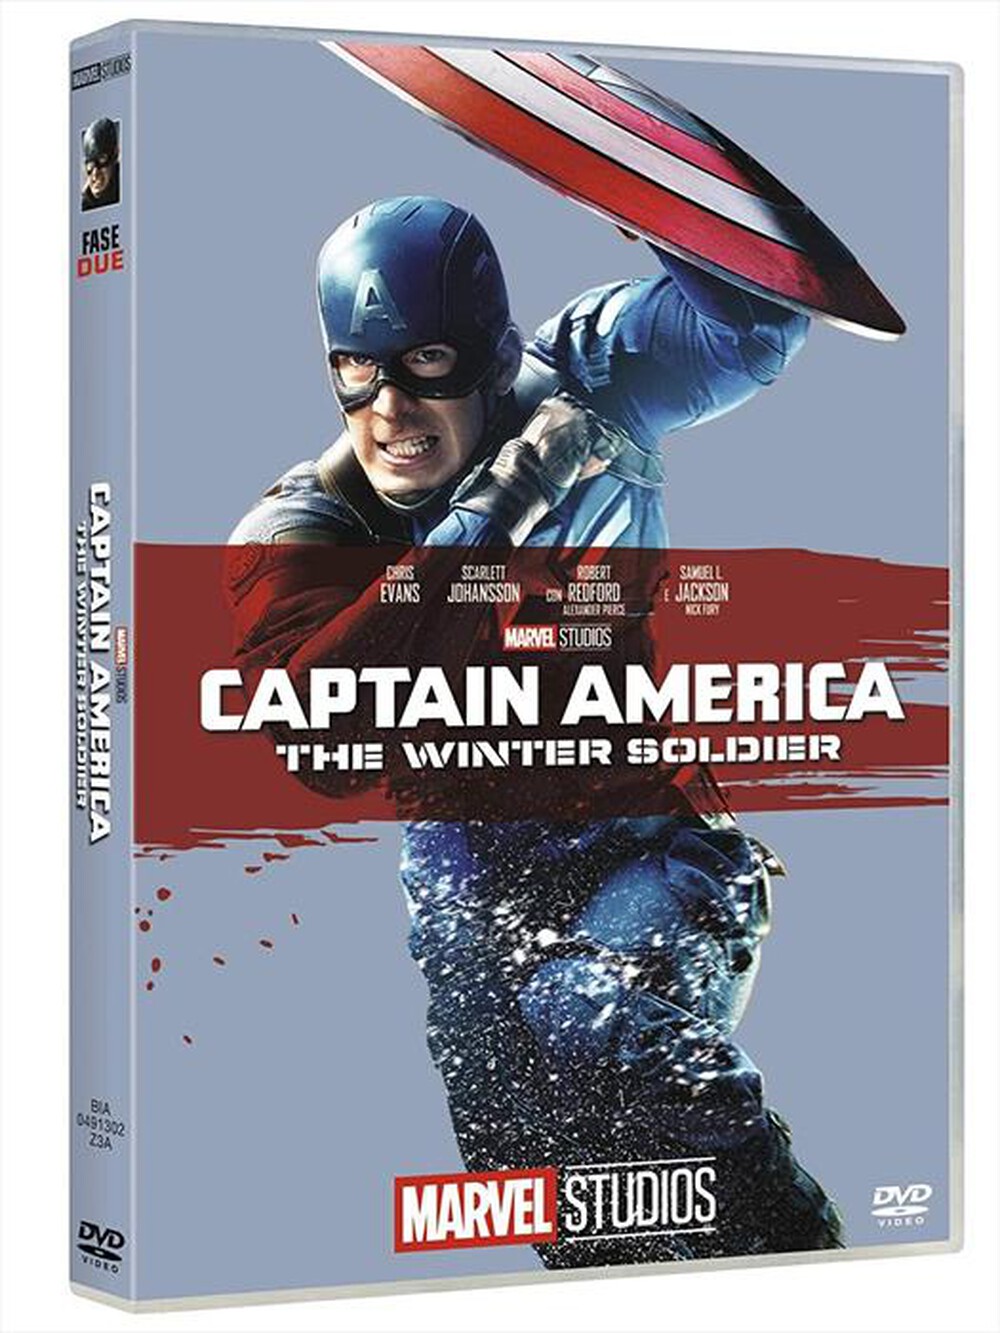 "EAGLE PICTURES - Captain America - The Winter Soldier (Edizione M"